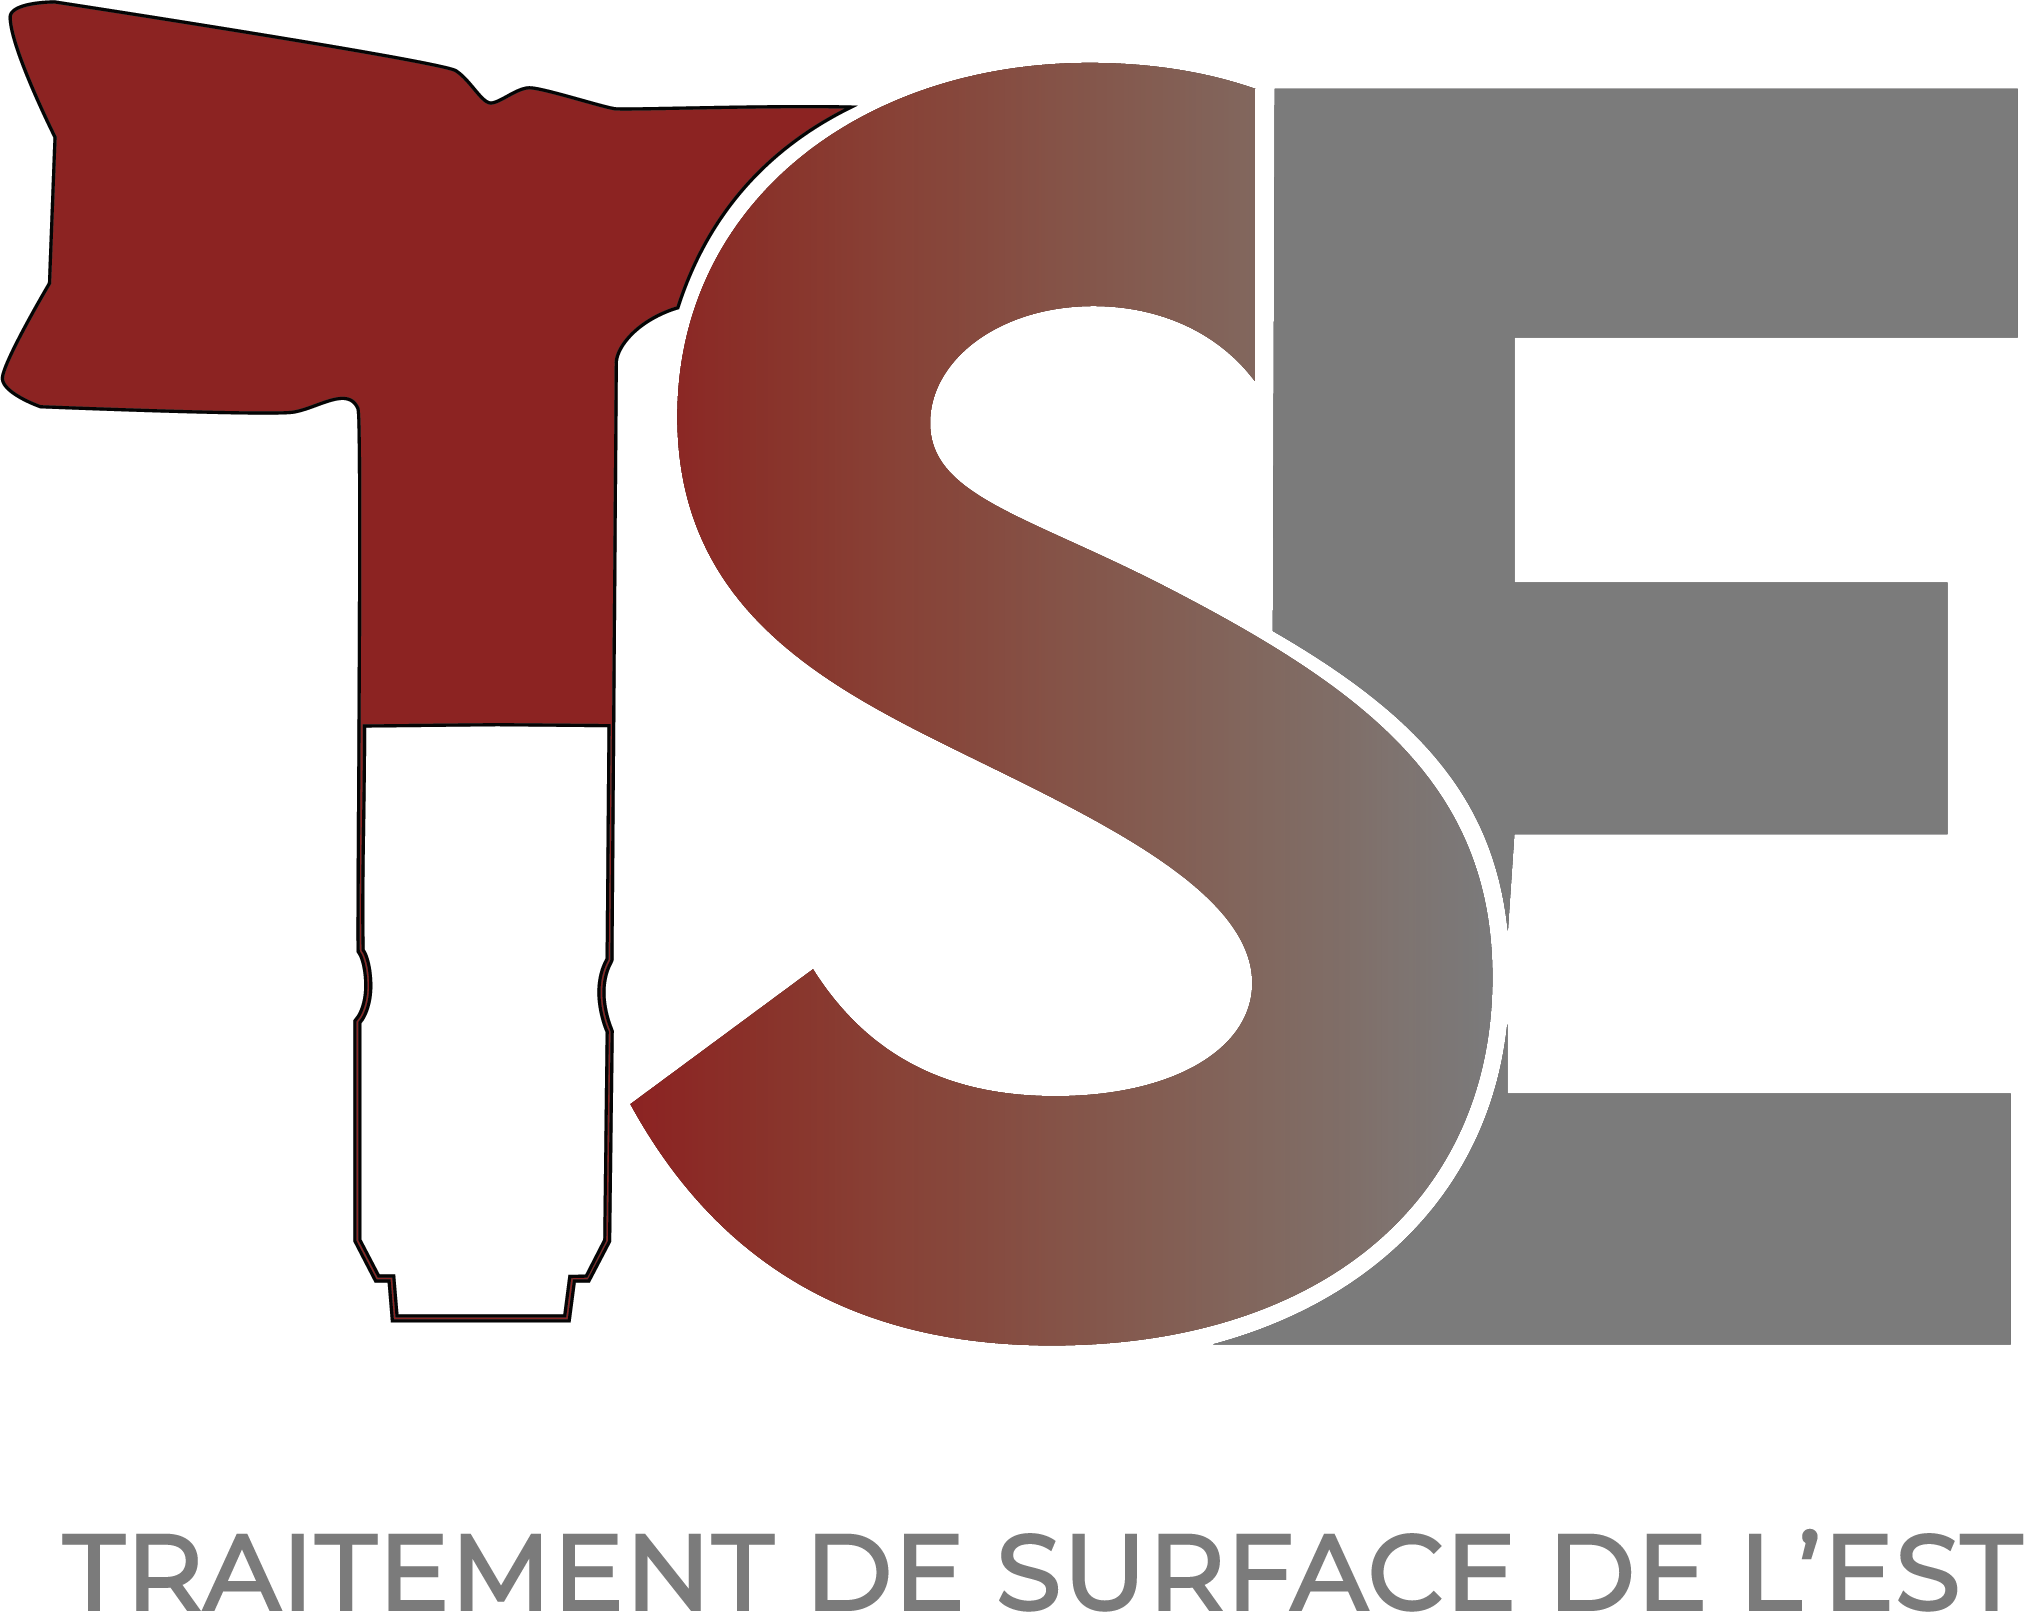 TRAITEMENT DE SURFACE DE L'EST